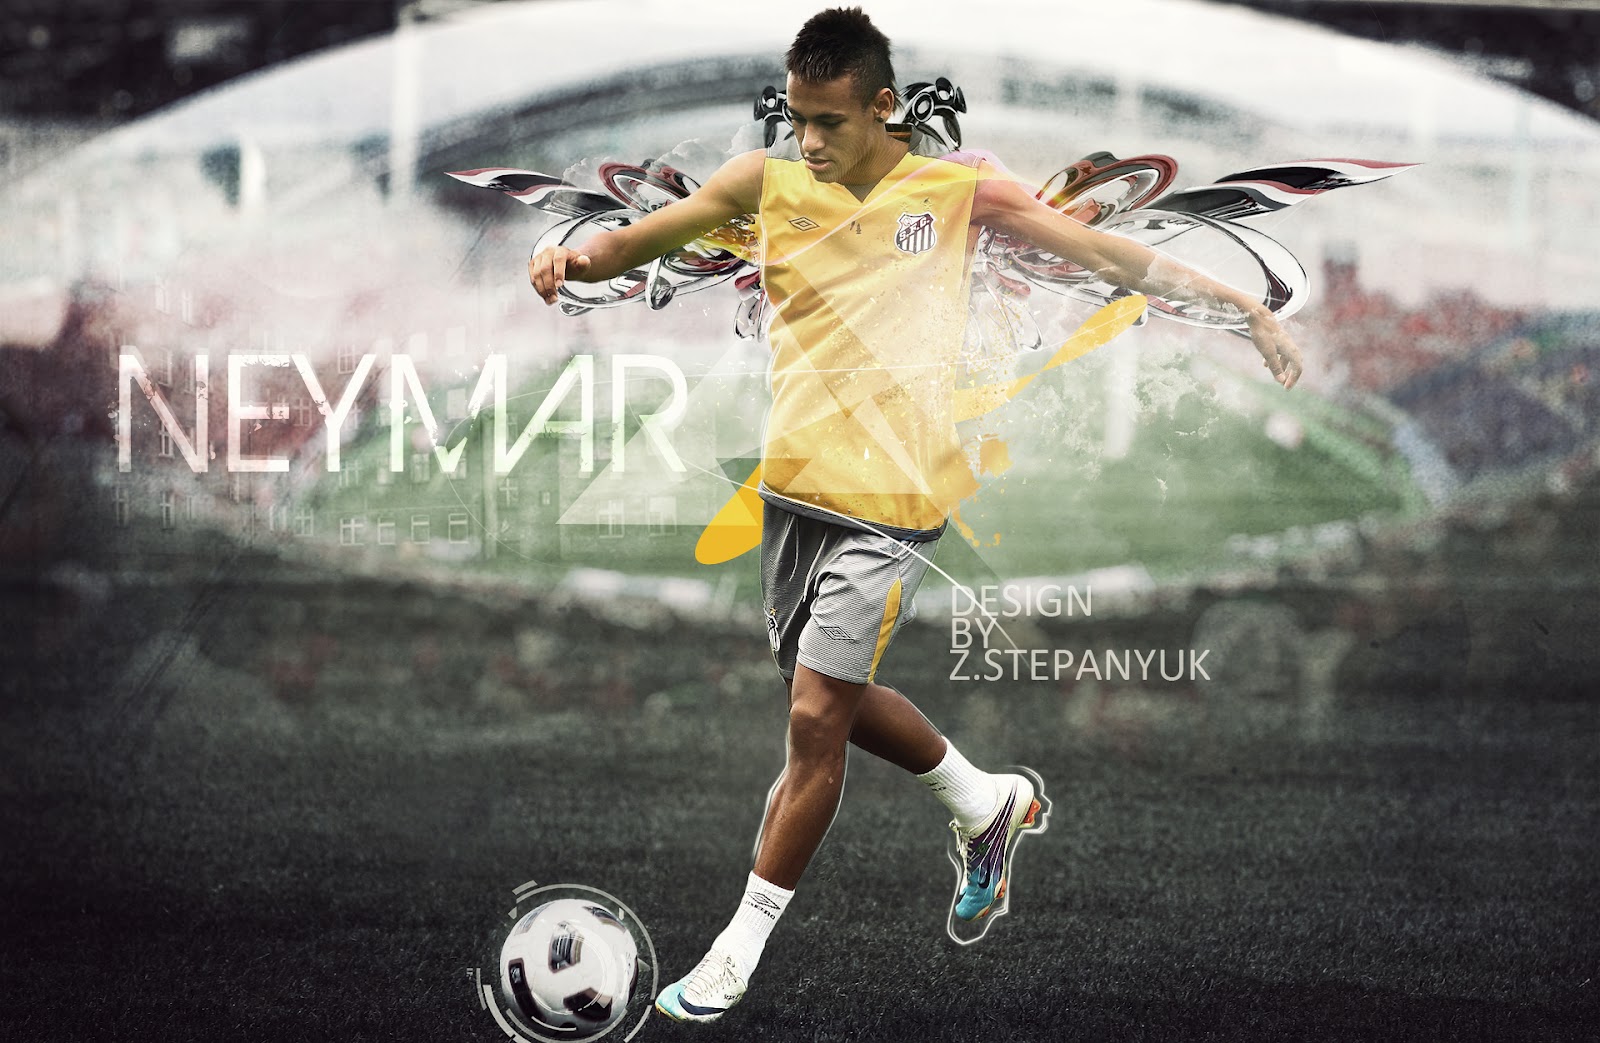 neymar 2017 wallpaper,football player,football,soccer,sports,player